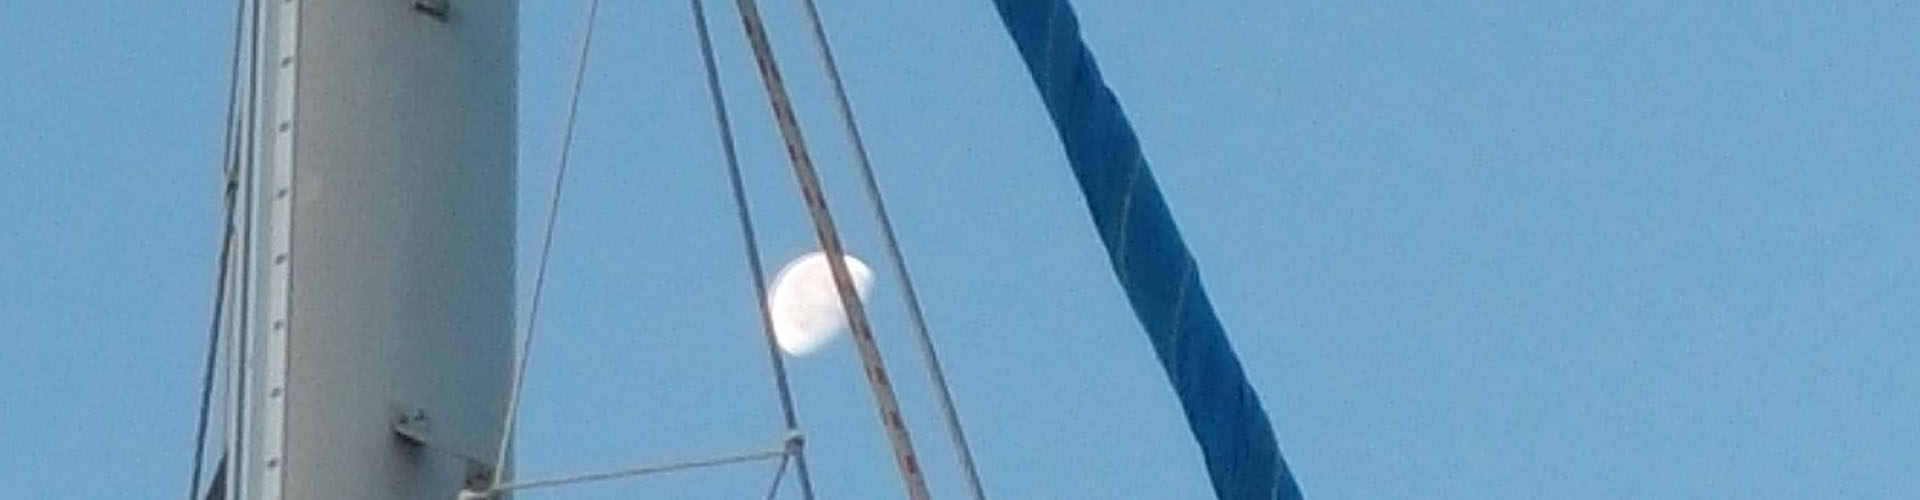 Giornata di vela accompagnati dalla luna